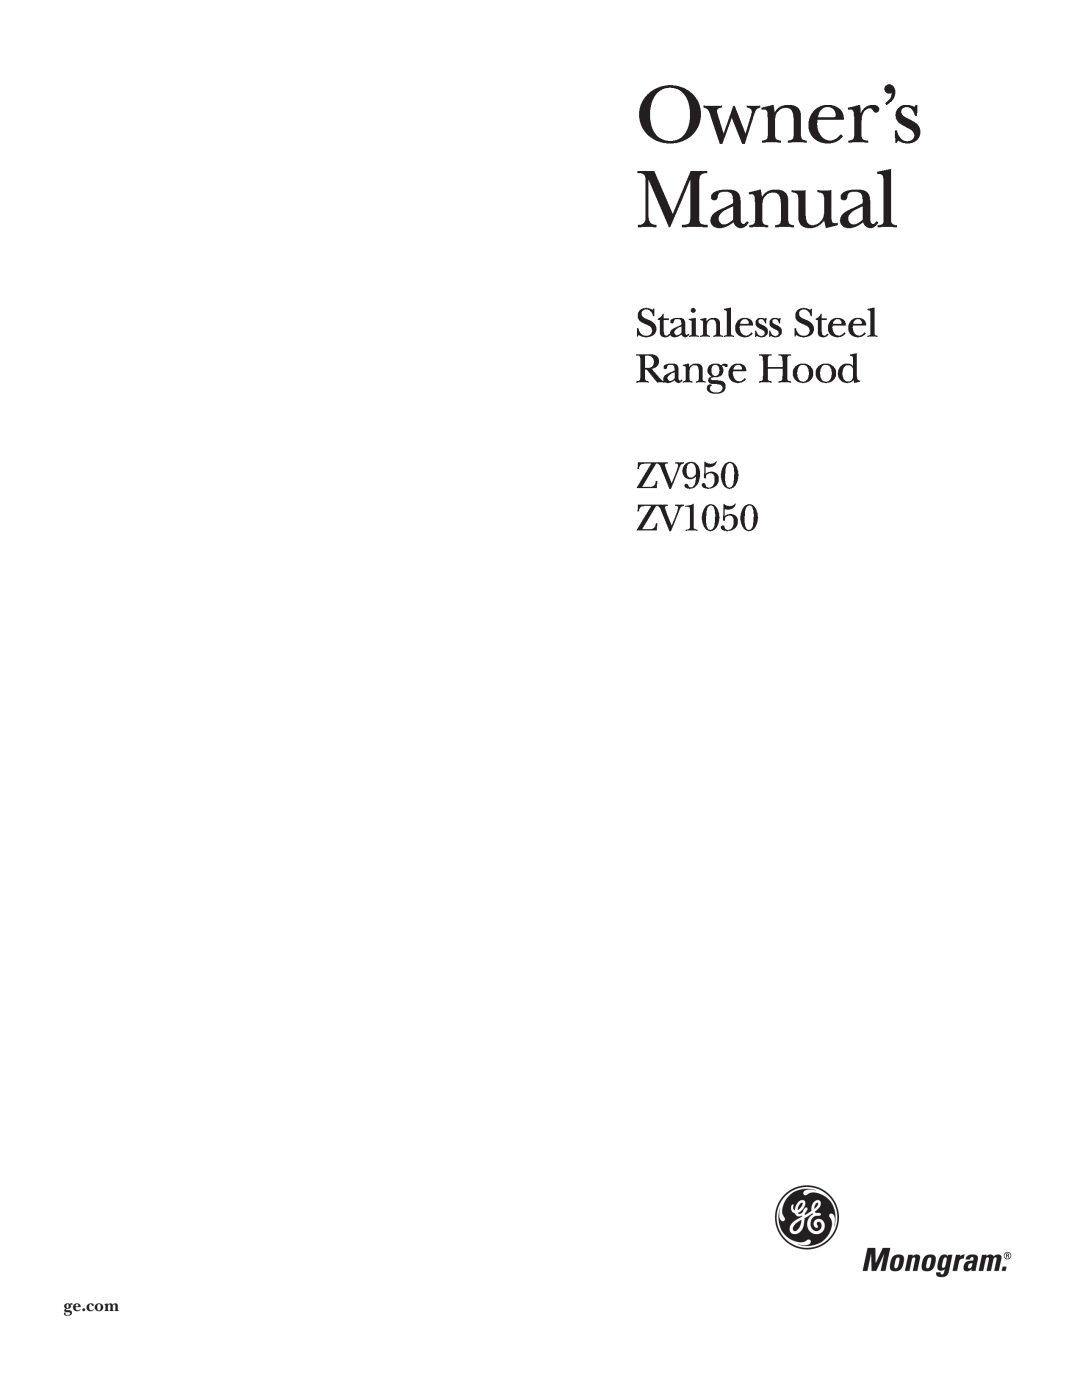 GE Monogram owner manual Stainless Steel Range Hood, ZV950 ZV1050 